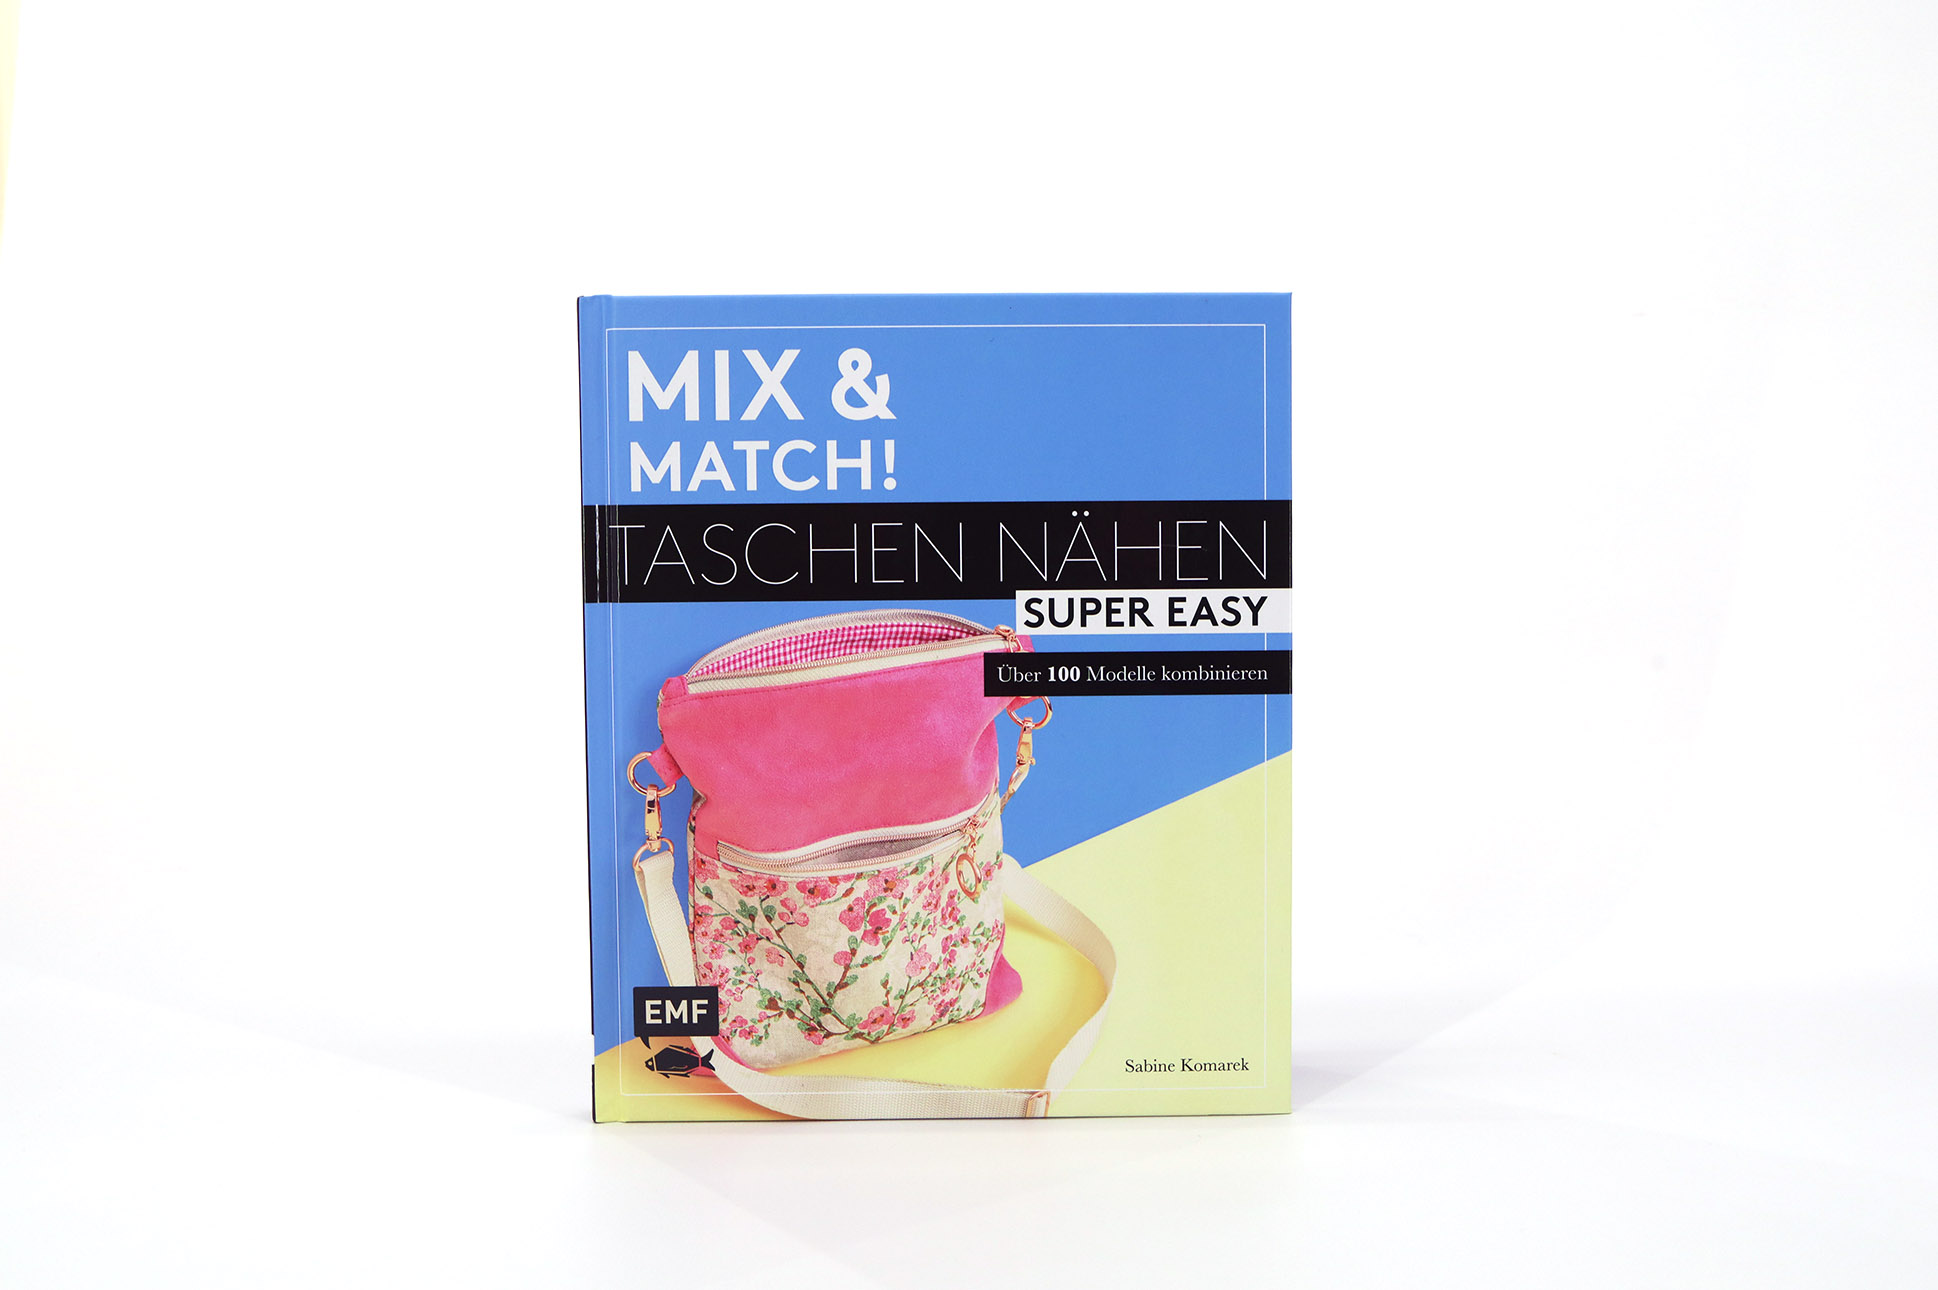 Mix und Match, Taschen nähen super easy